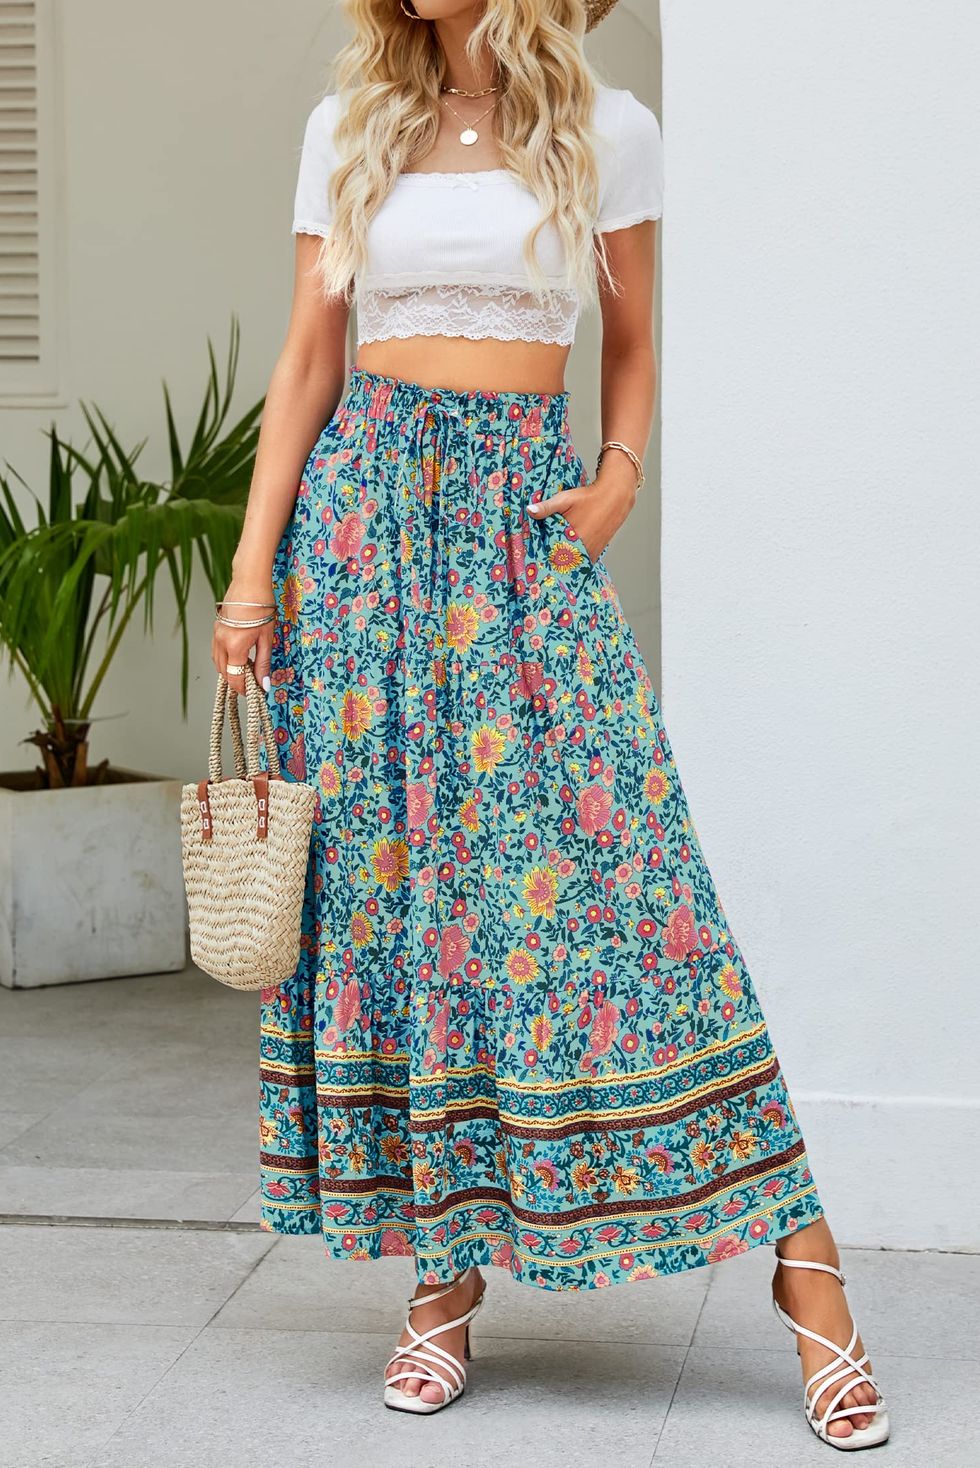 15 Long Skirt Outfits for Summer - Long Skirt Trend 2023